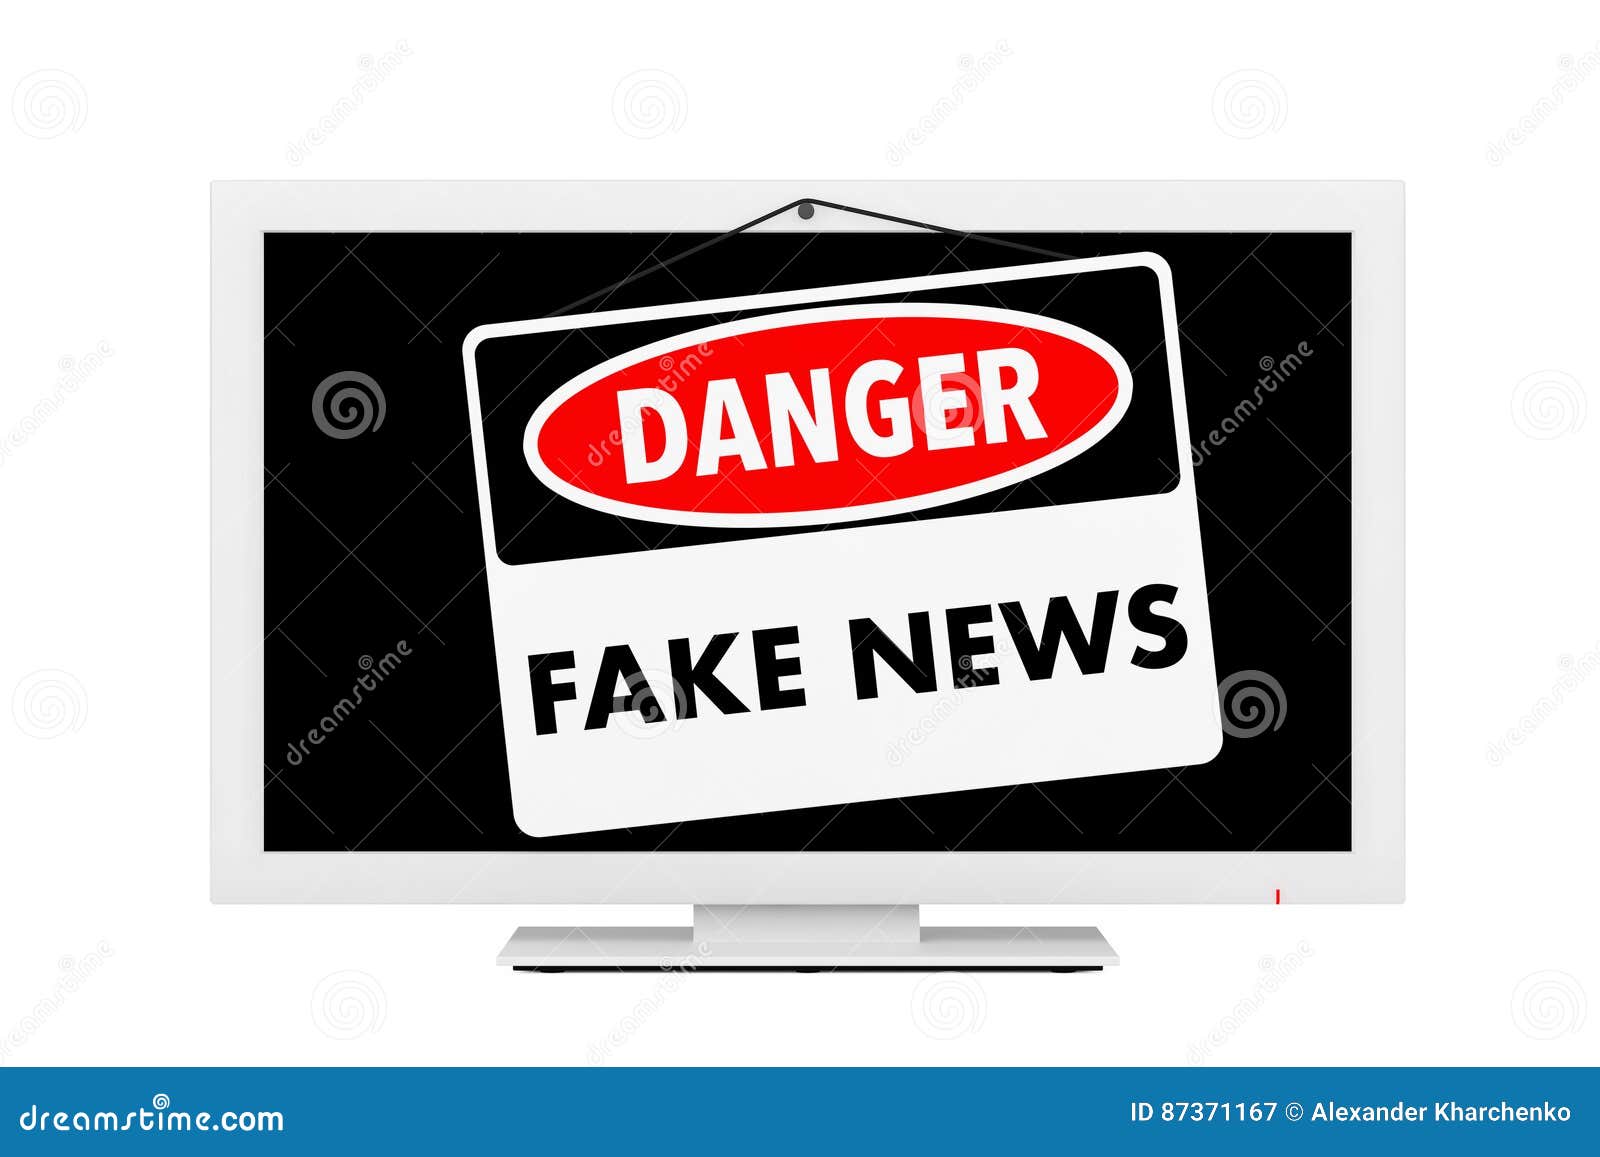 Fake News Danger Sign Over TV Screen. 3d Rendering Stock Illustration ...